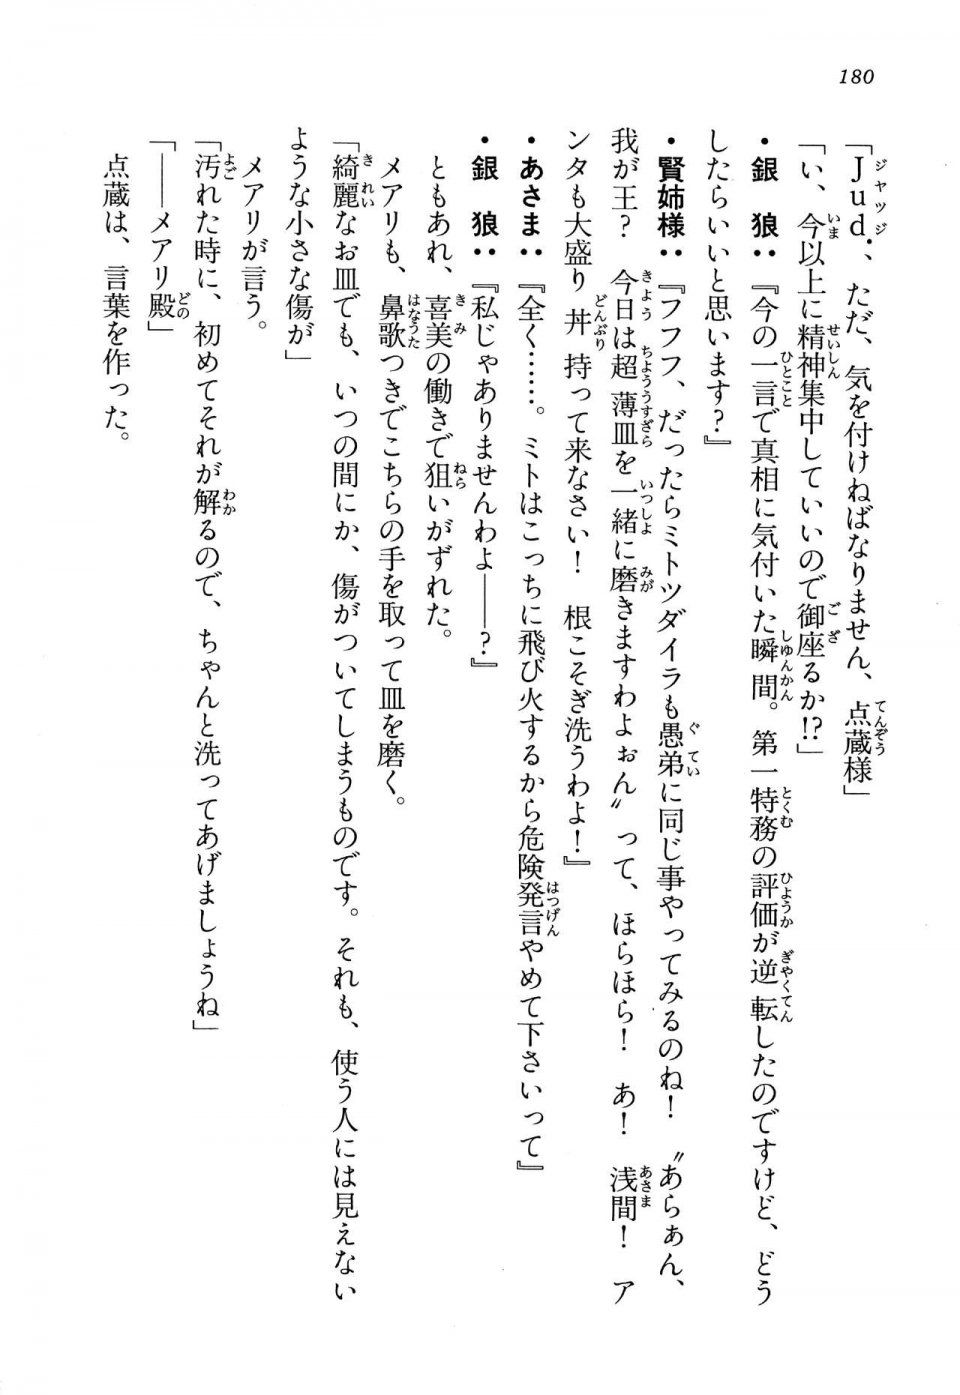 Kyoukai Senjou no Horizon LN Vol 13(6A) - Photo #180